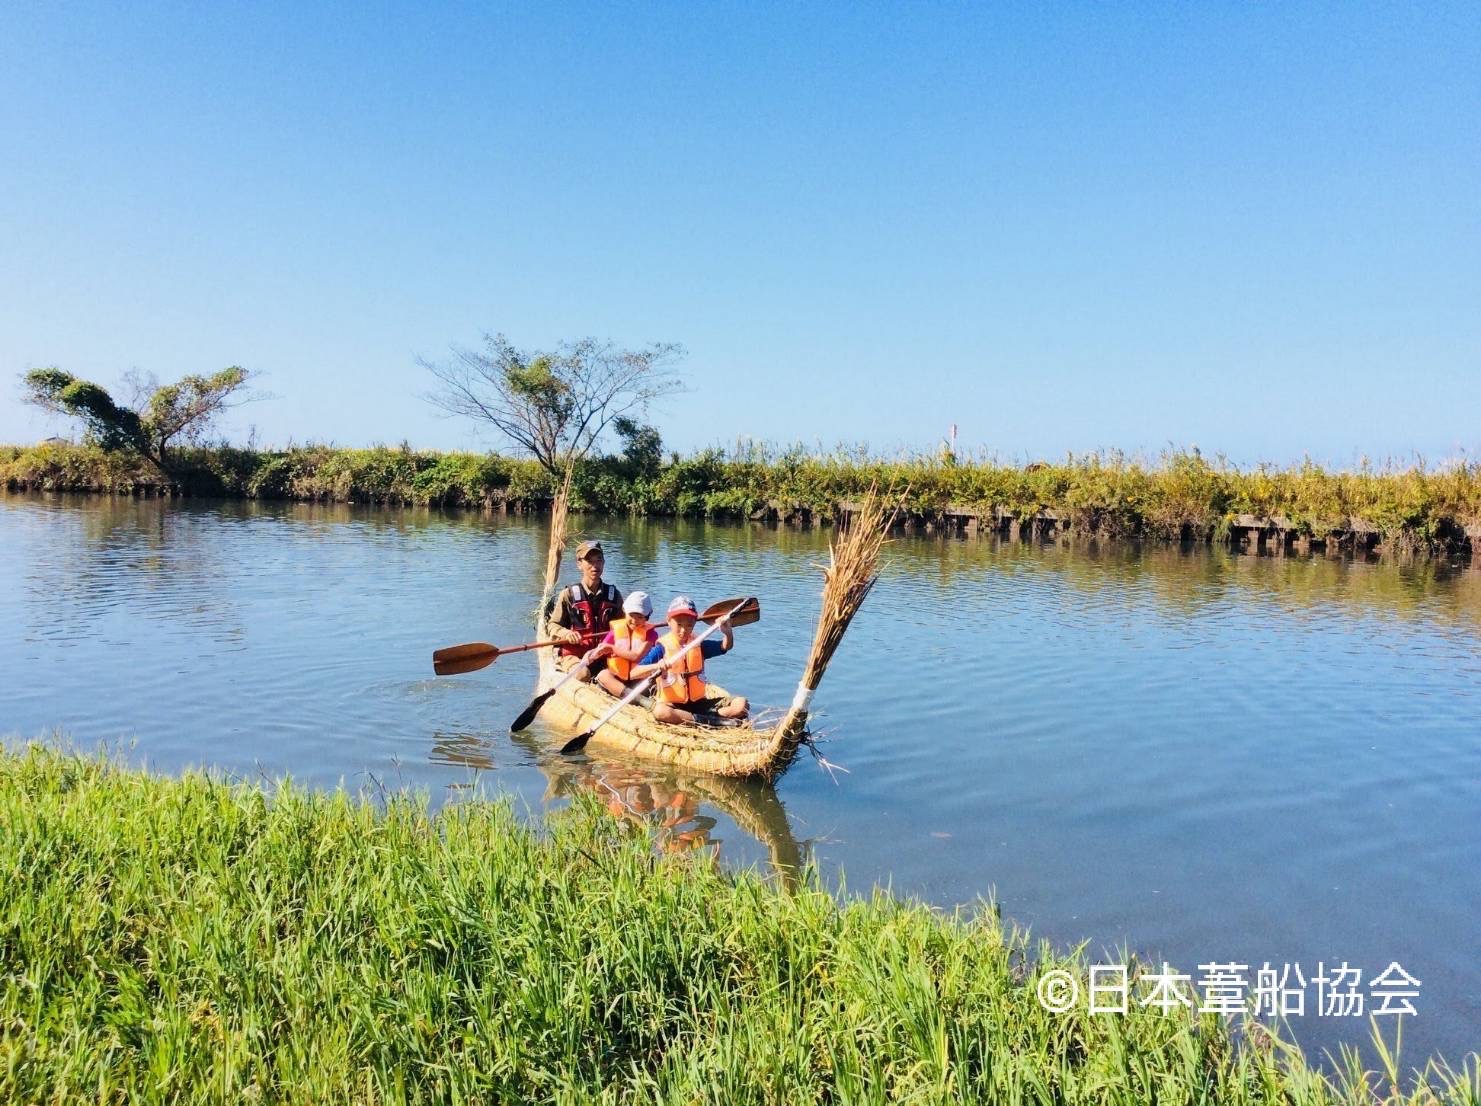 葦船を作って、竹生島をめざそう！！in びわ湖<br />
Biwako Yoshi-Fune Project